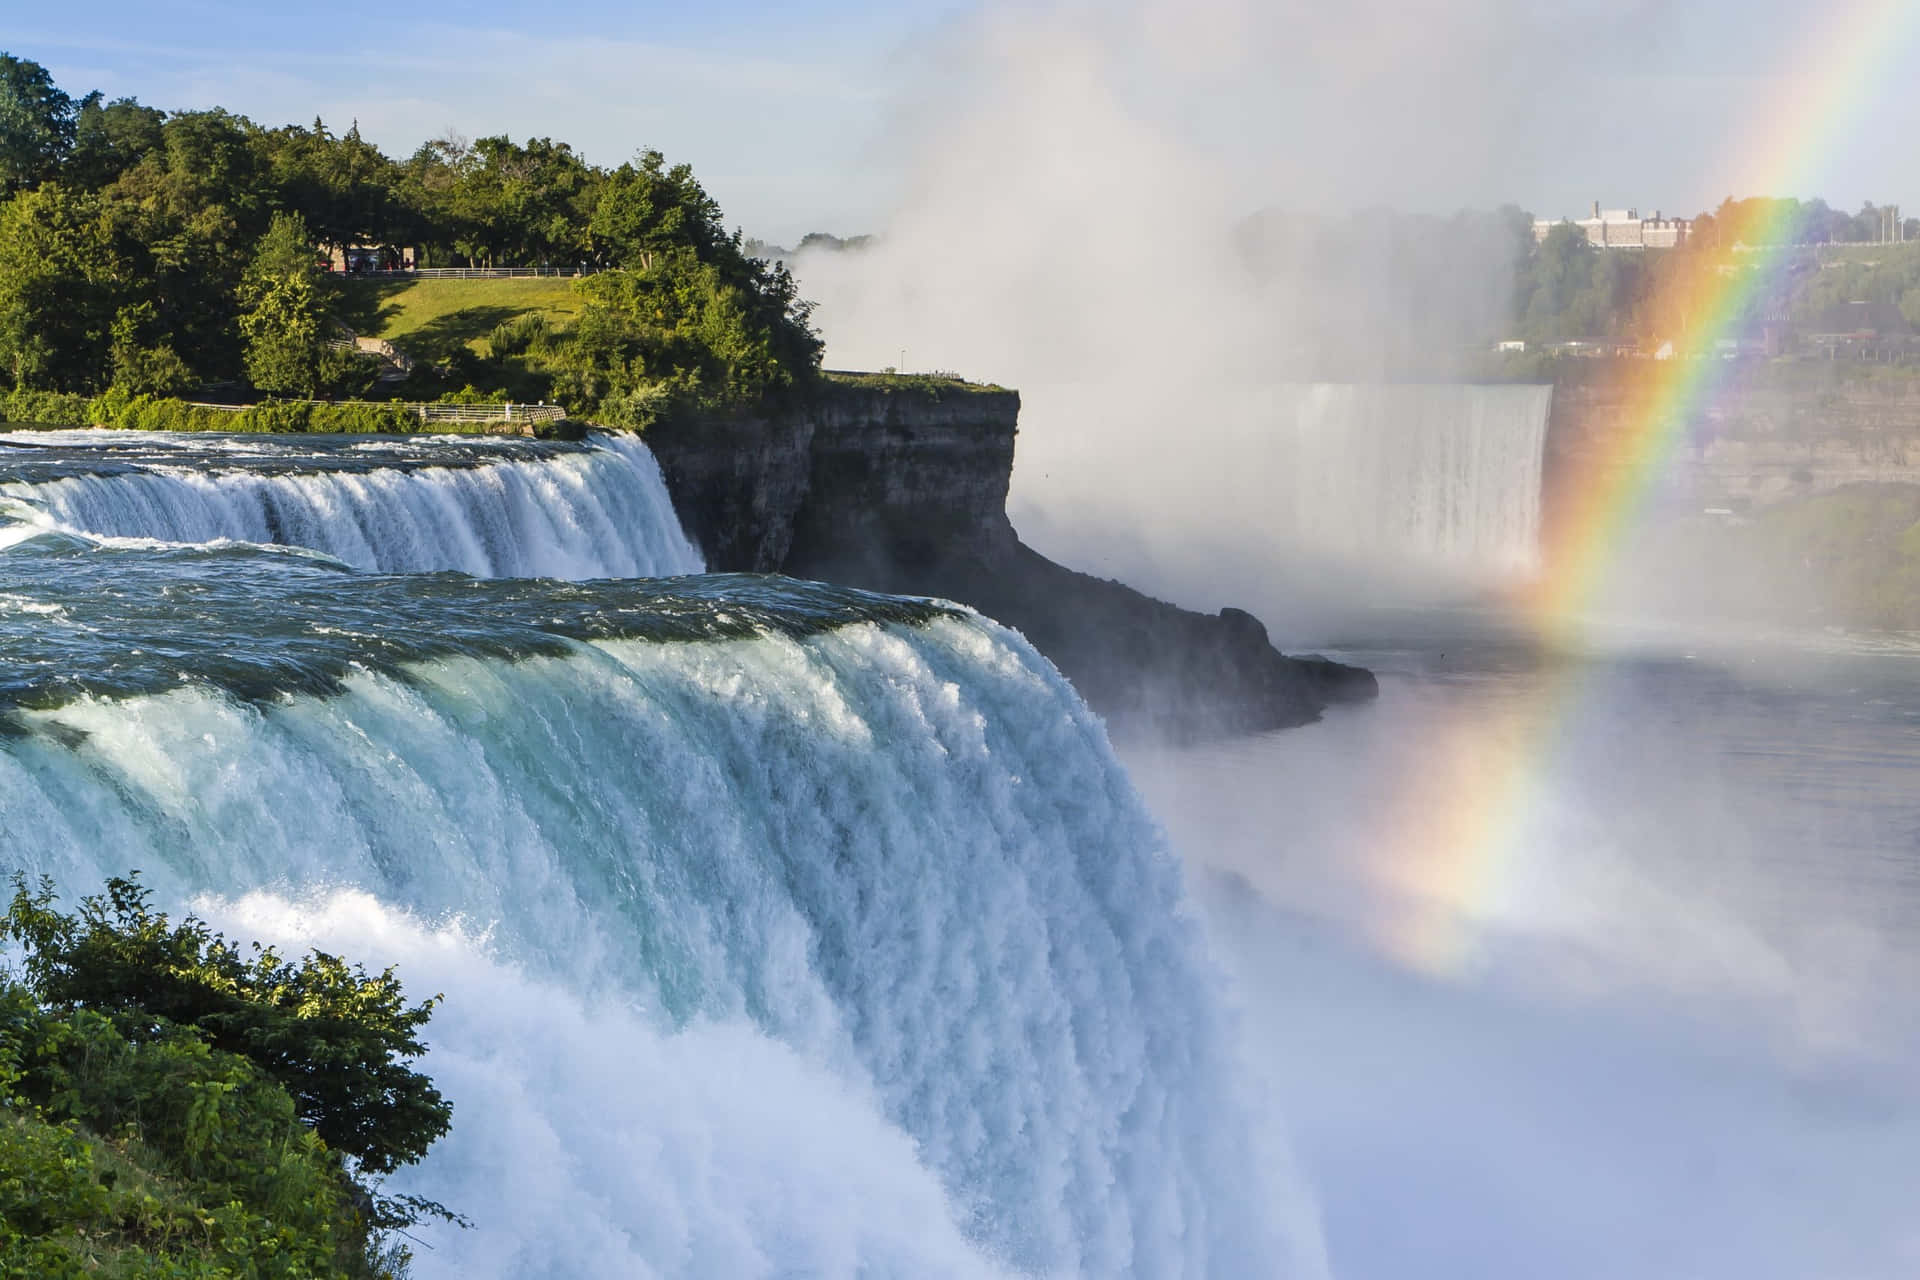 Witness the majestic beauty of Niagara Falls